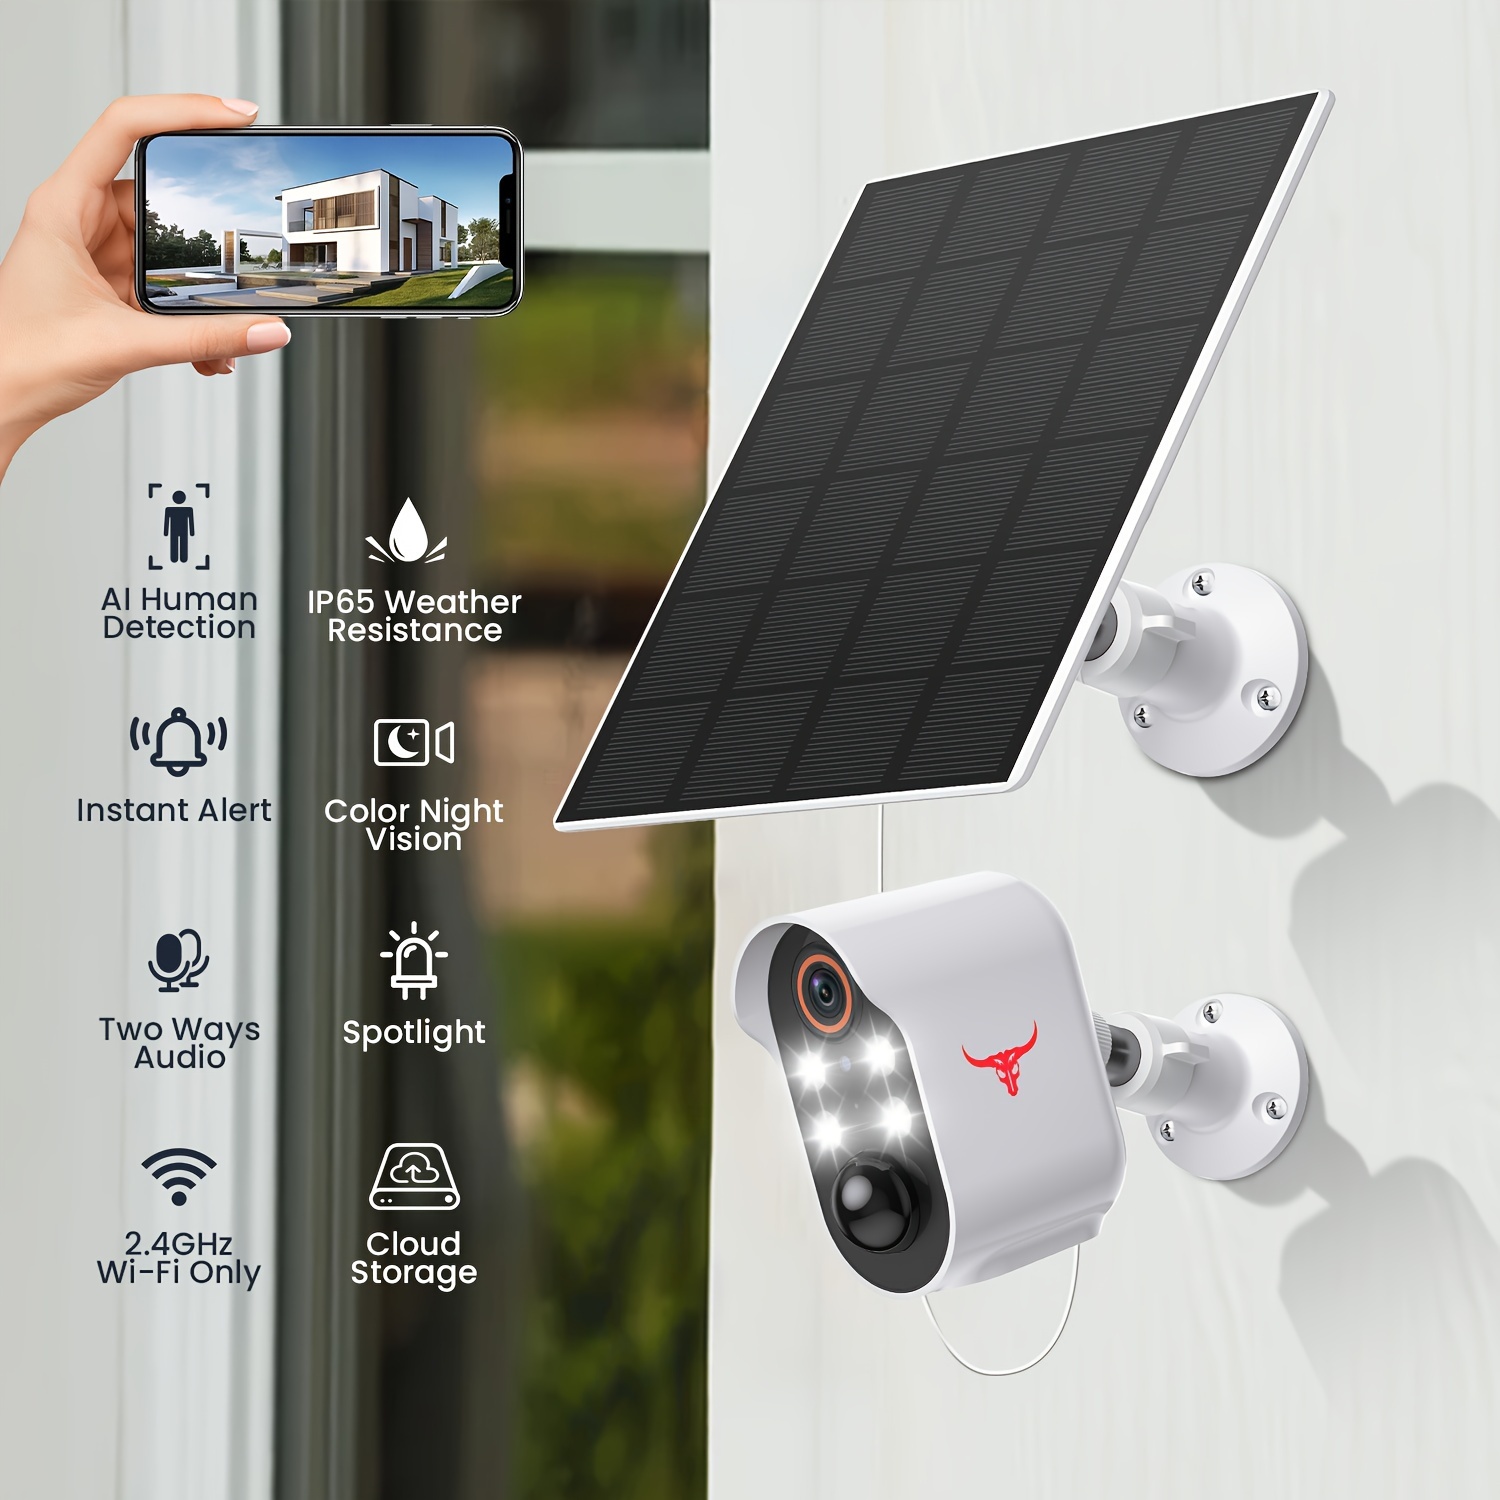 Cámara solar WiFi de seguridad para exteriores, 100% sin cables, funciona  con pilas, 1080p, conversación de 2 vías, visión nocturna, detección de